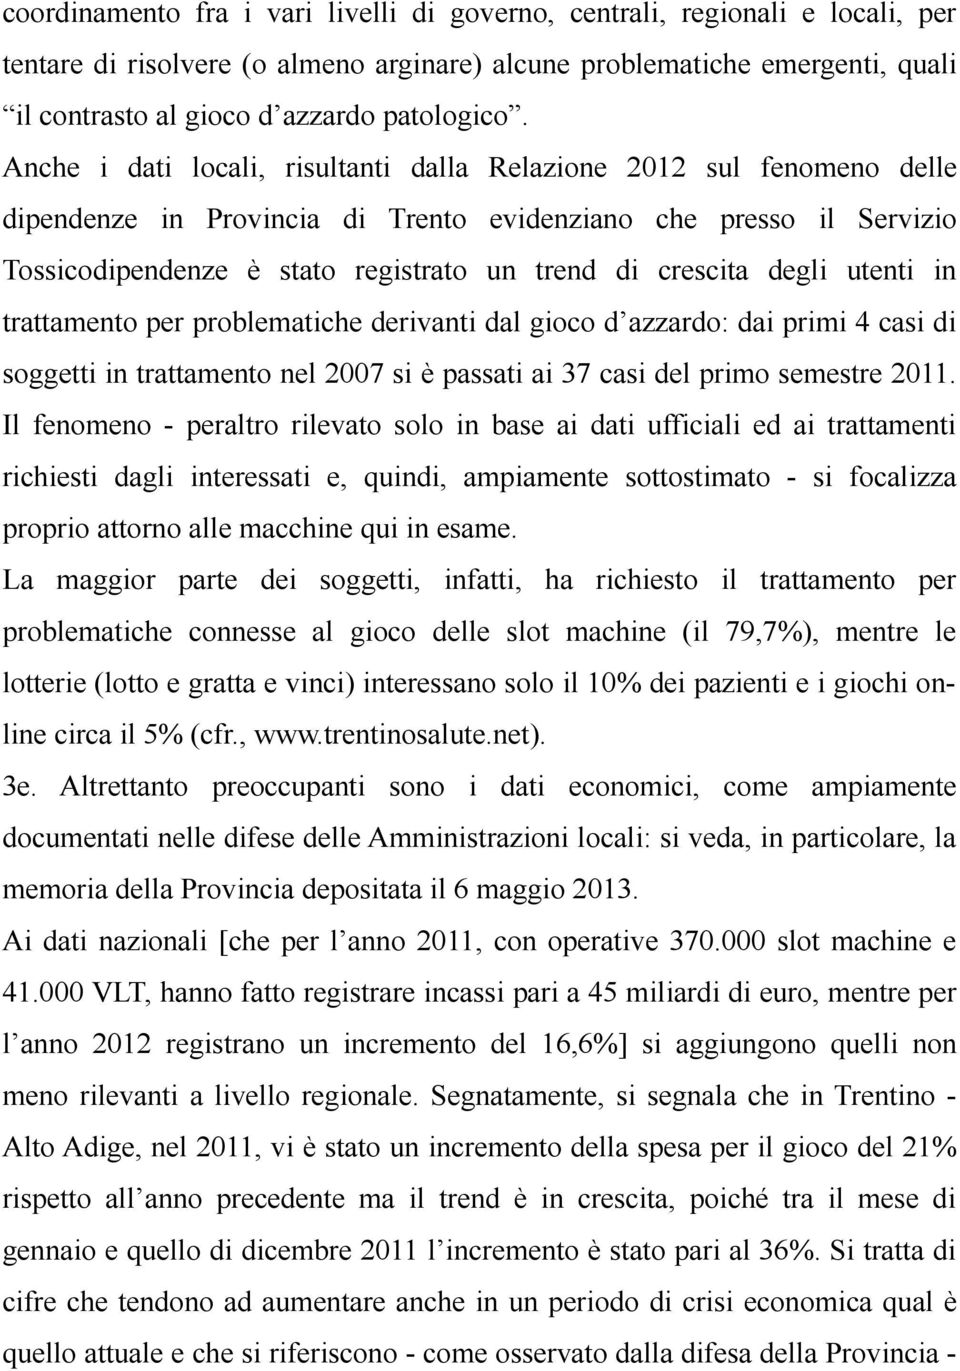 Anche i dati locali, risultanti dalla Relazione 2012 sul fenomeno delle dipendenze in Provincia di Trento evidenziano che presso il Servizio Tossicodipendenze è stato registrato un trend di crescita